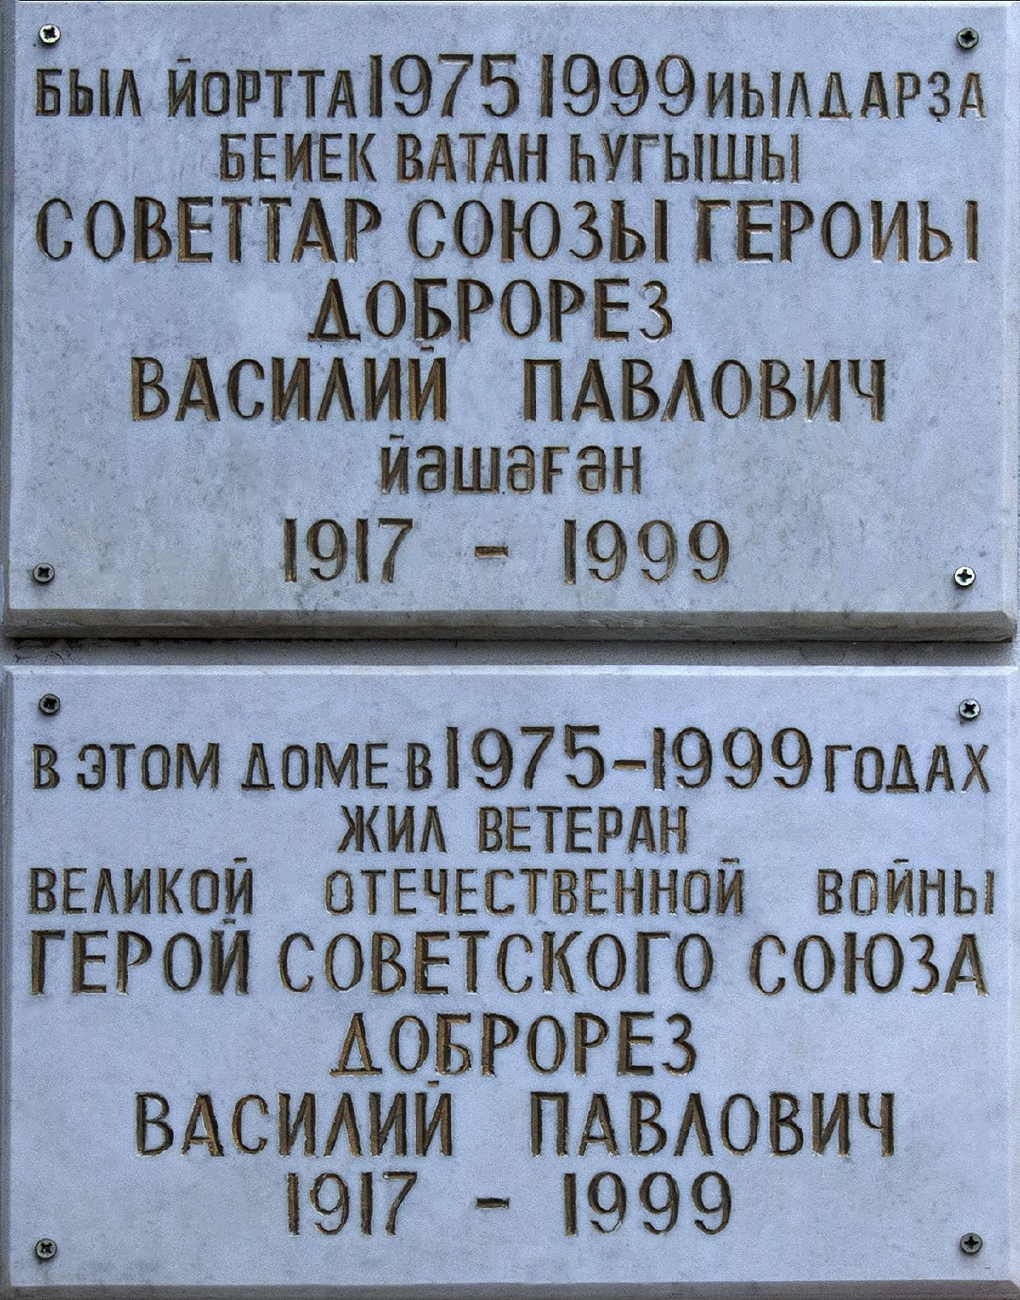 Ufa, Бульвар Ибрагимова, 37/1. Ufa — Memorial plaques